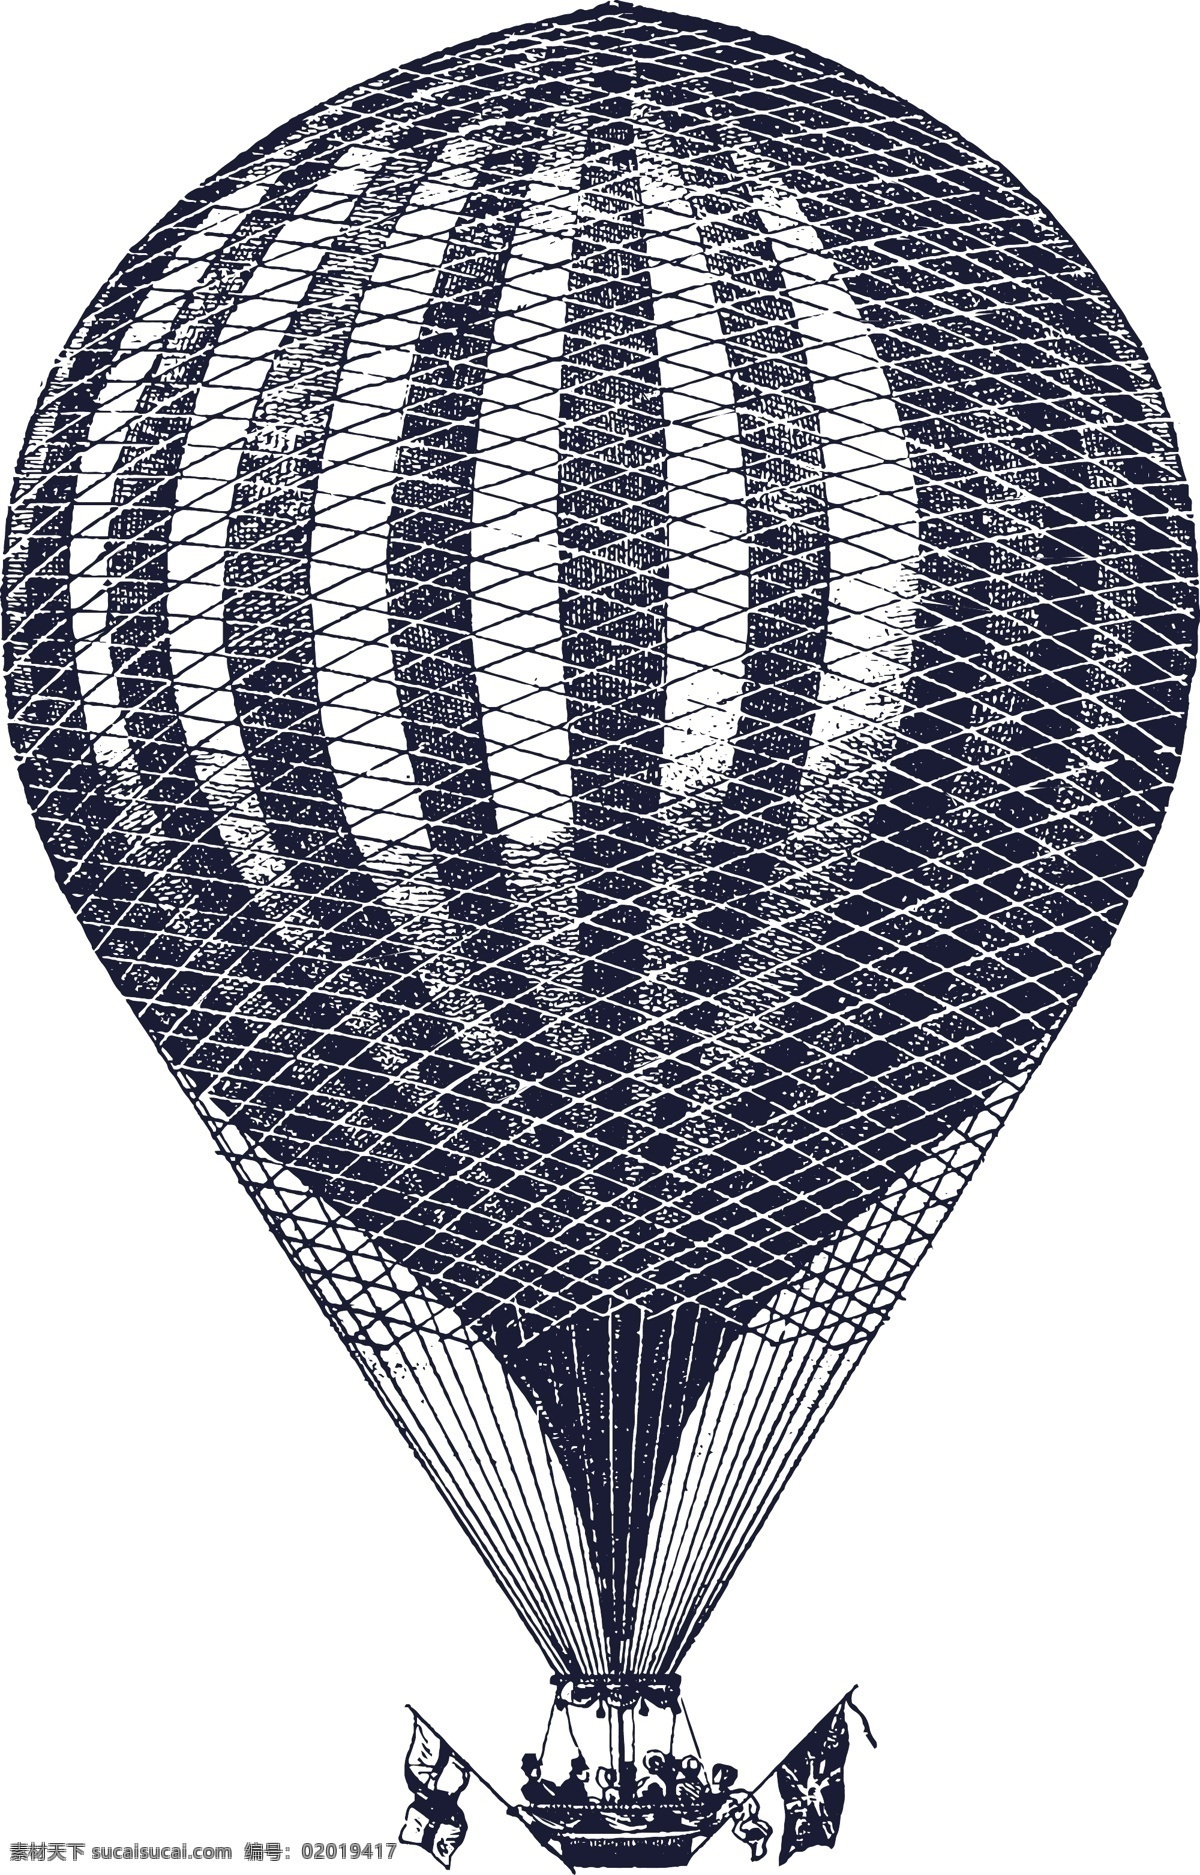 手绘热气球 热气球插画 热气球 抽象插画 素描 黑白 手绘 矢量 手绘交通工具 现代科技 交通工具